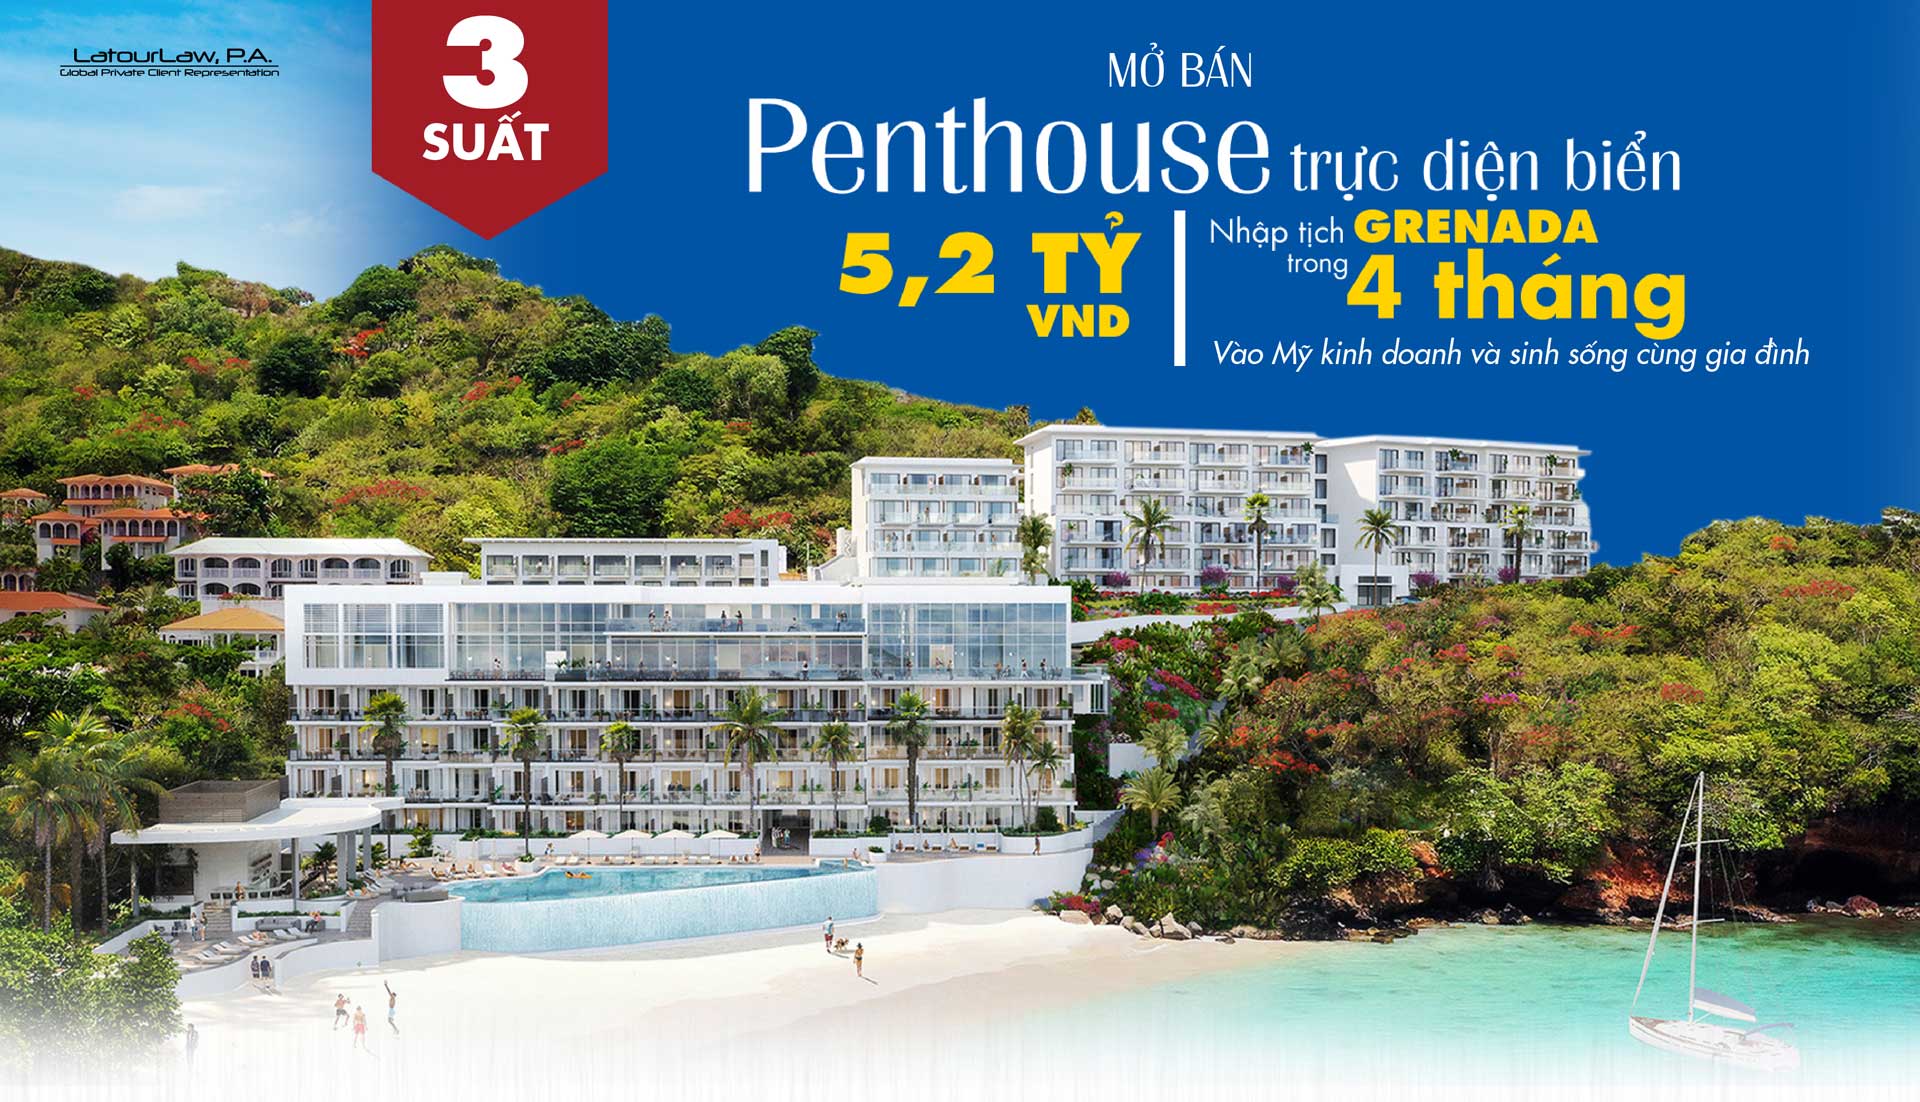 Nhập tịch Grenada - Mở bán Penthouse trực diện biển